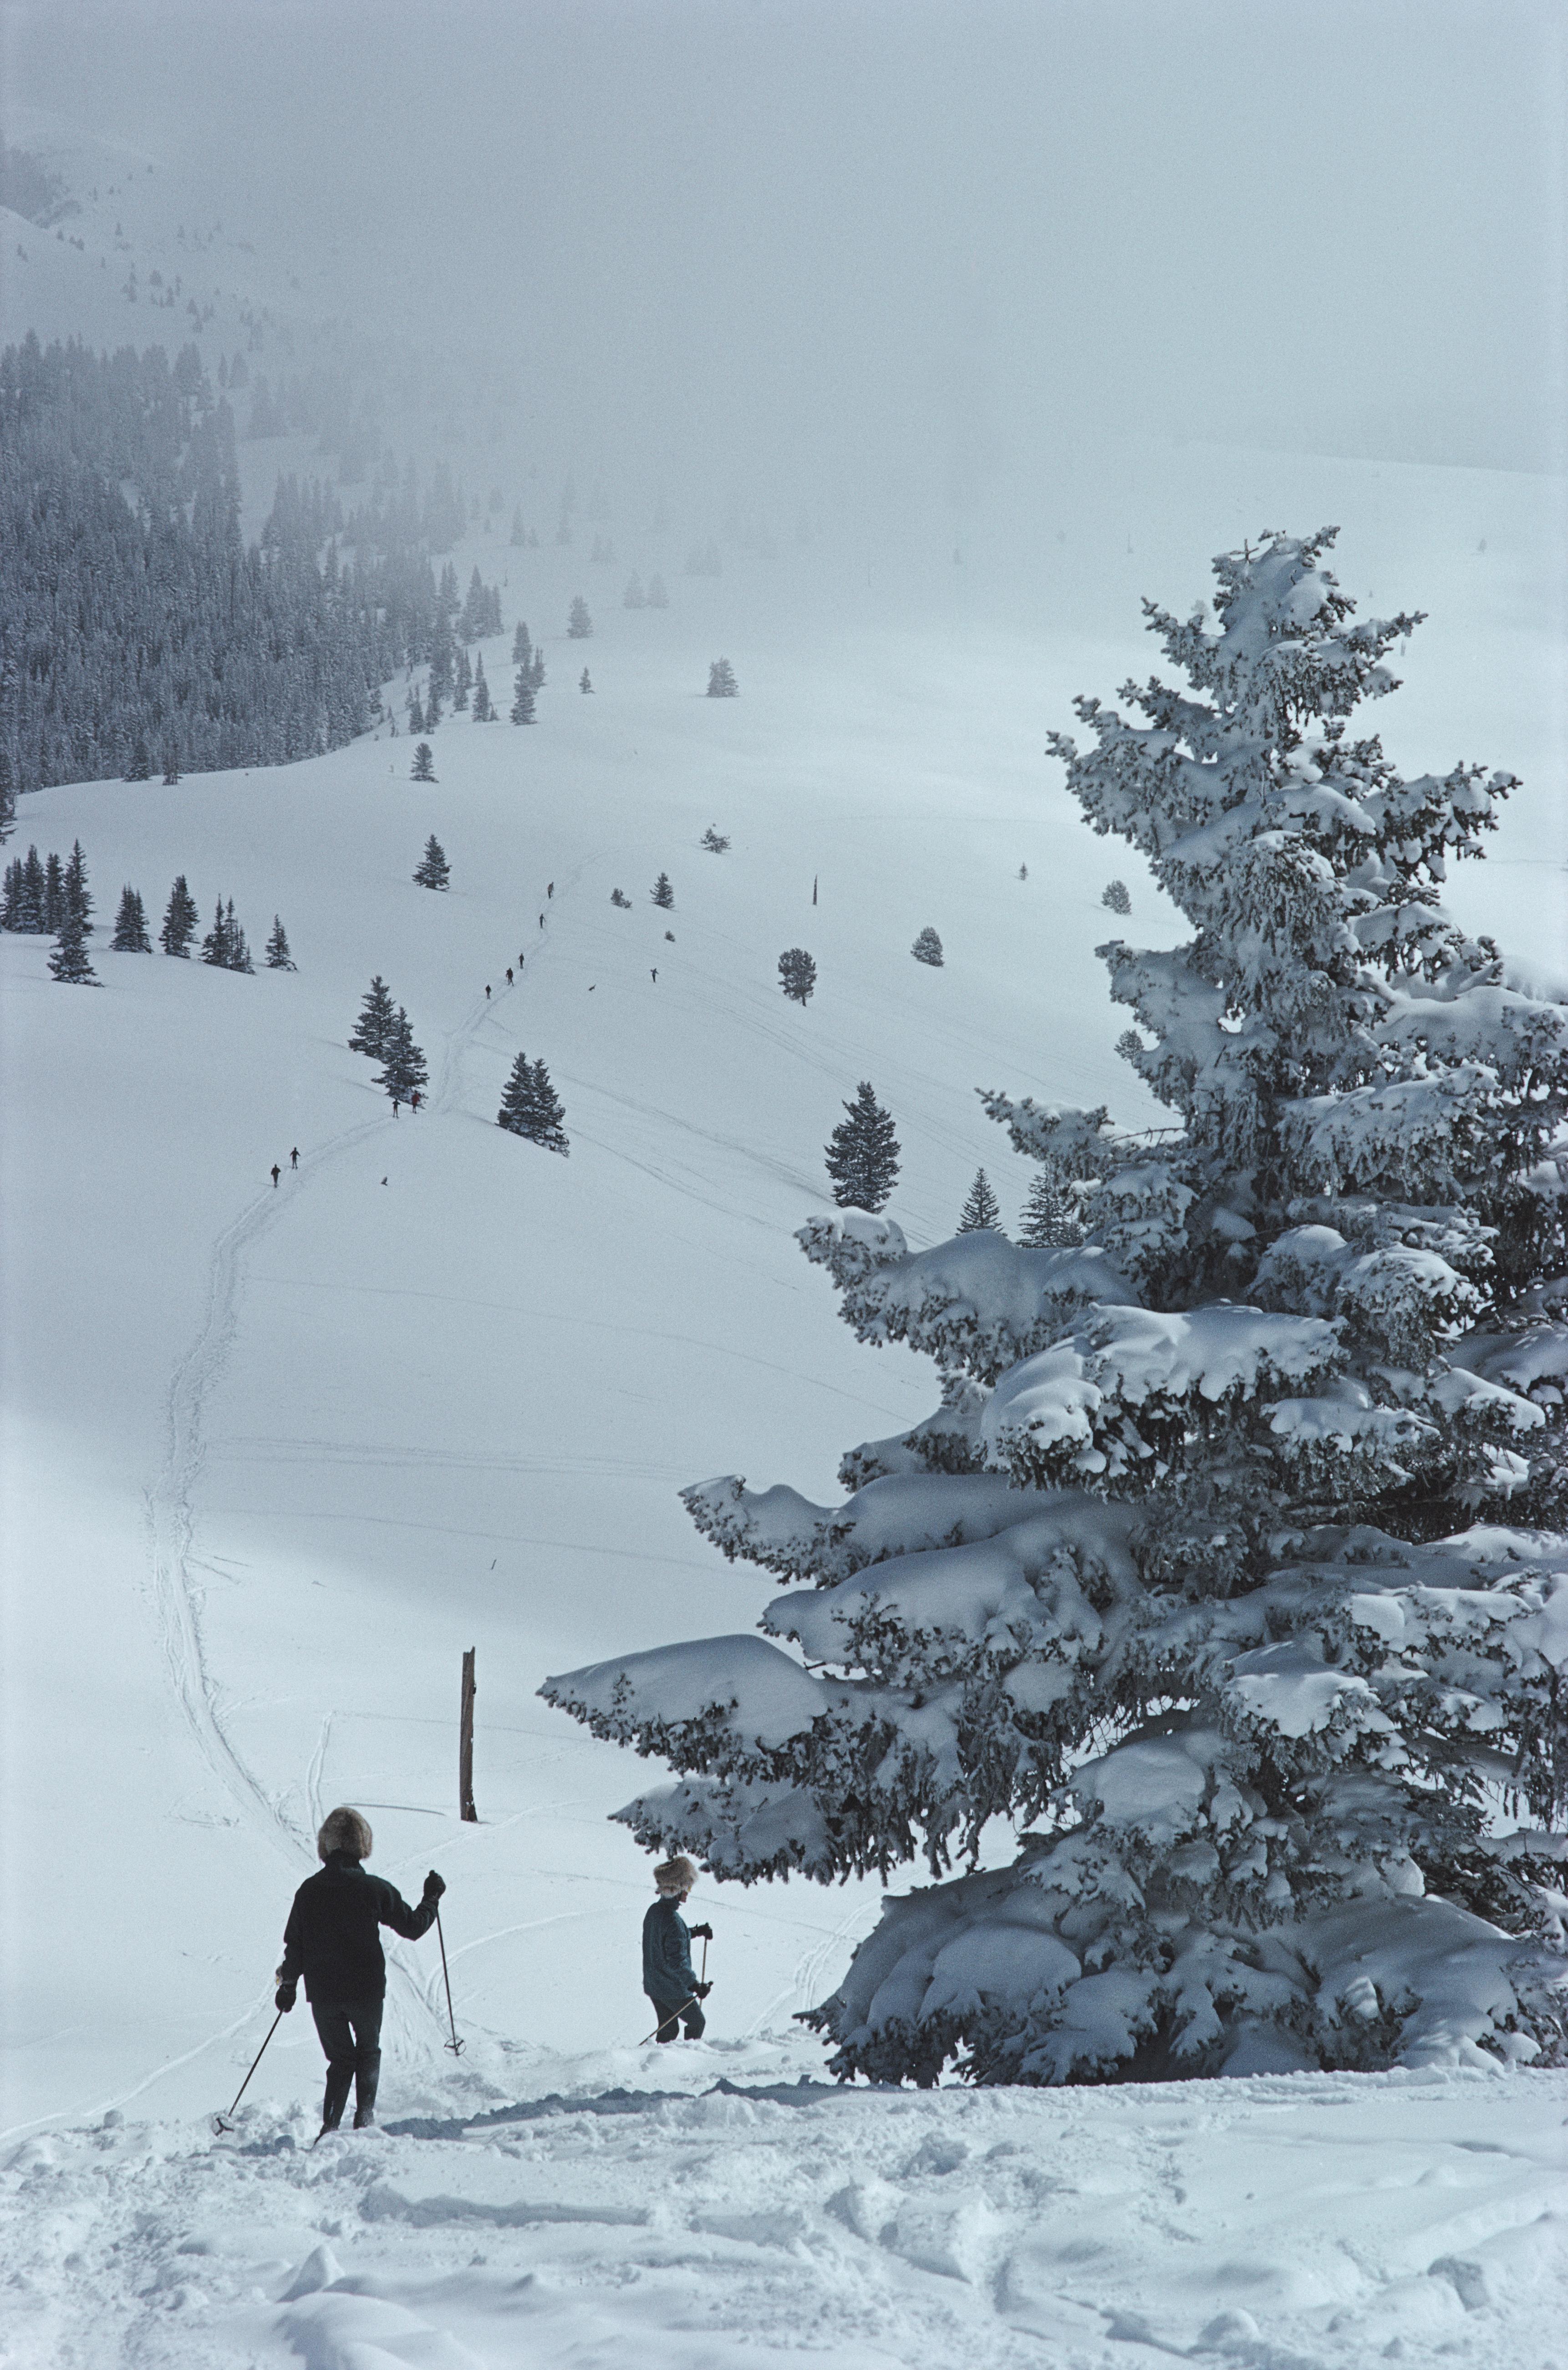 Skifahrer fahren an einem schneebedeckten Baum vorbei in Vail, Colorado, USA, 1964

Schlanke Aarons
Skifahren in Vail, 1964
Lambda-Druck
4 Größen verfügbar
Slim Aarons Estate Edition

60 x 40 Zoll
$3950

40 x 30 Zoll
$3350

30 x 20 Zoll
$3000

24 x